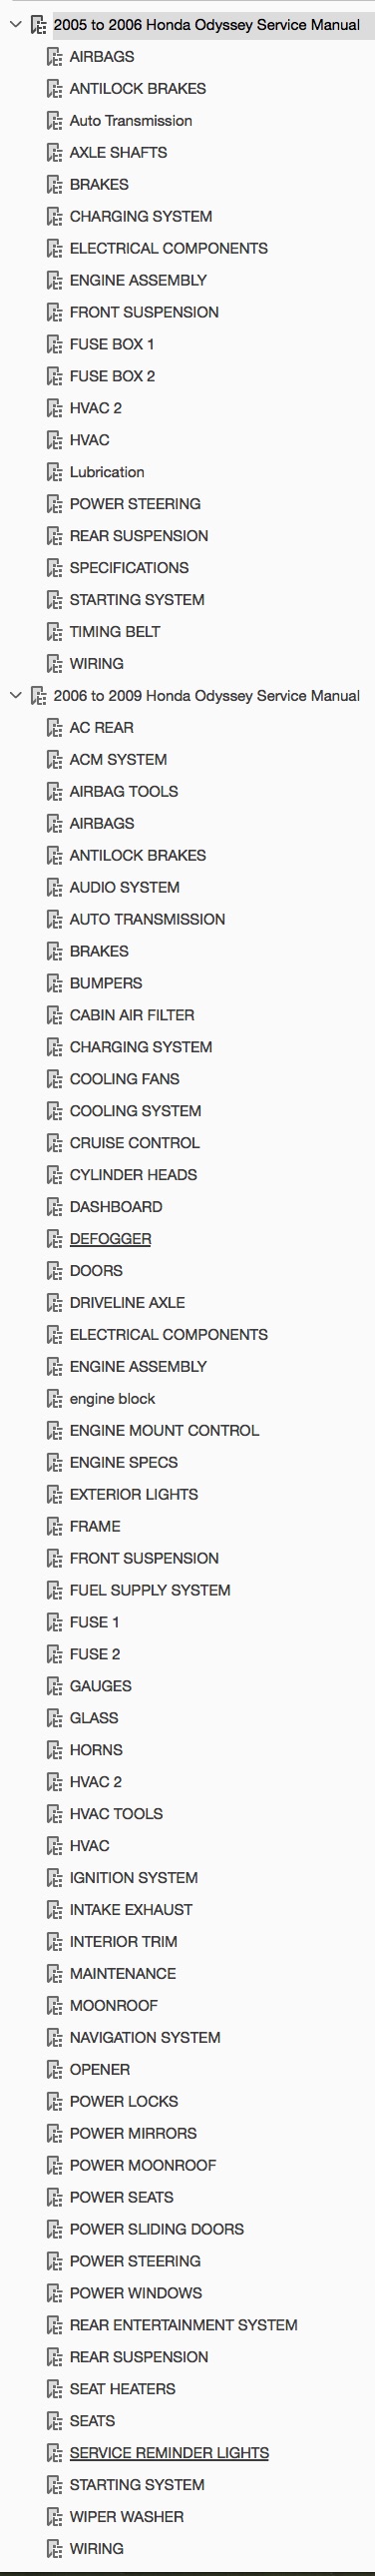 Table of Contents 2005-2009 Honda Odyssey Repair Manual